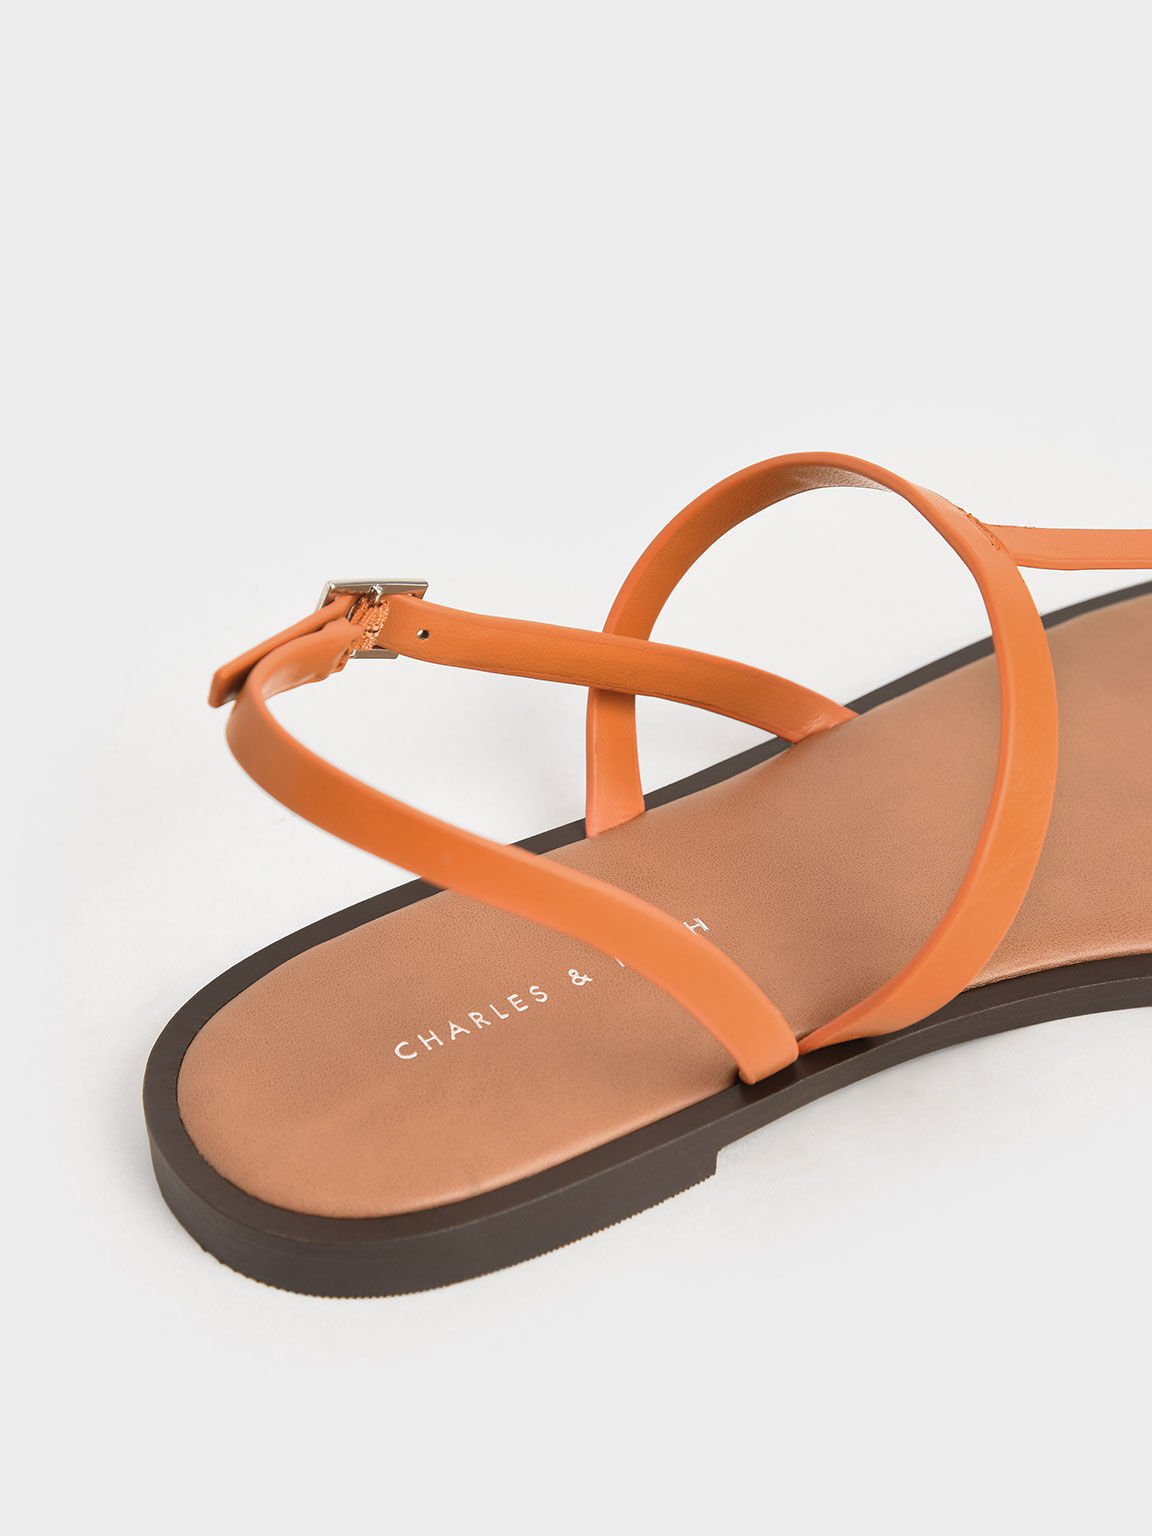 T-Bar Slingback Sandals, Orange, hi-res